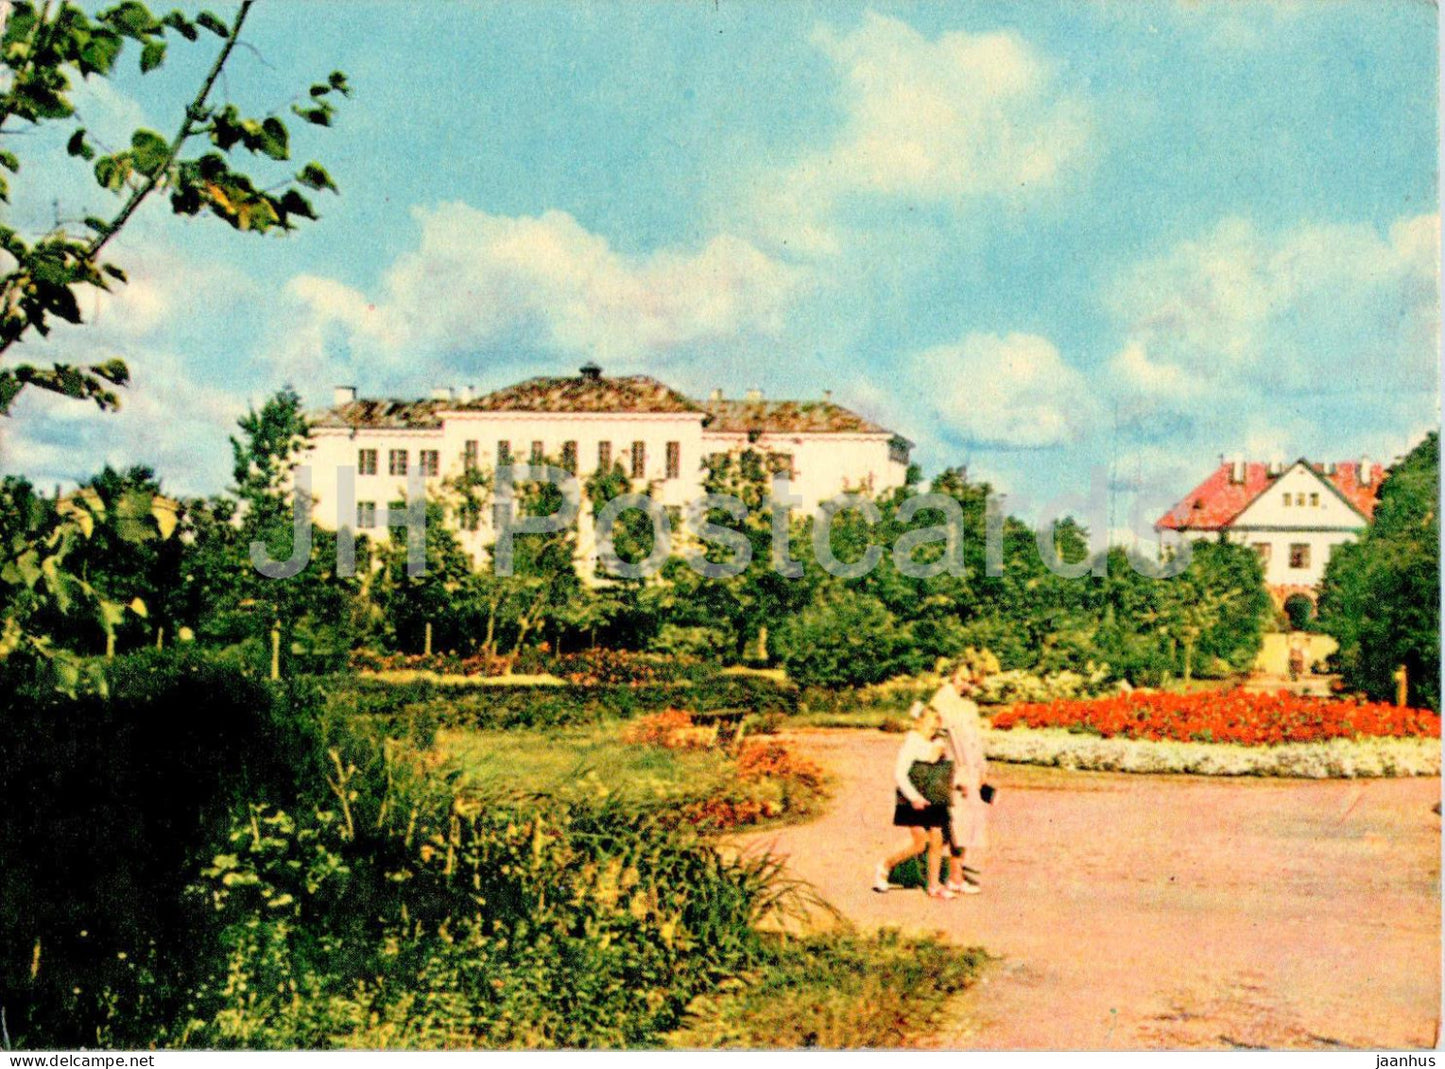 Valka - Latvia USSR - unused - JH Postcards